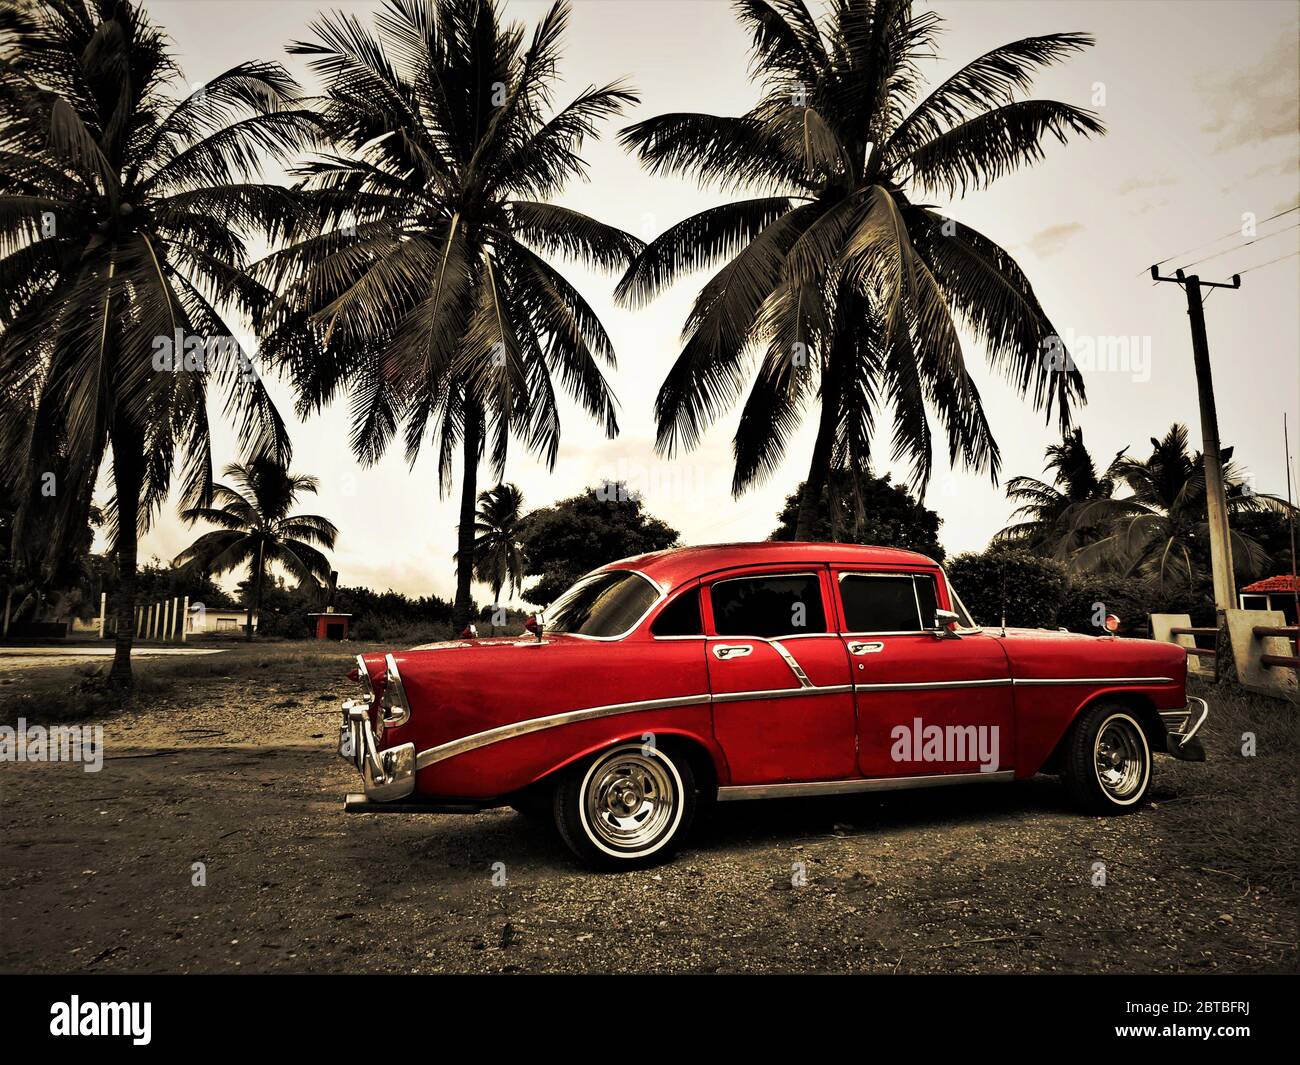 Alte rote klassische kubanische Auto und einige Palmen in karibischen Strand Umgebung Stockfoto